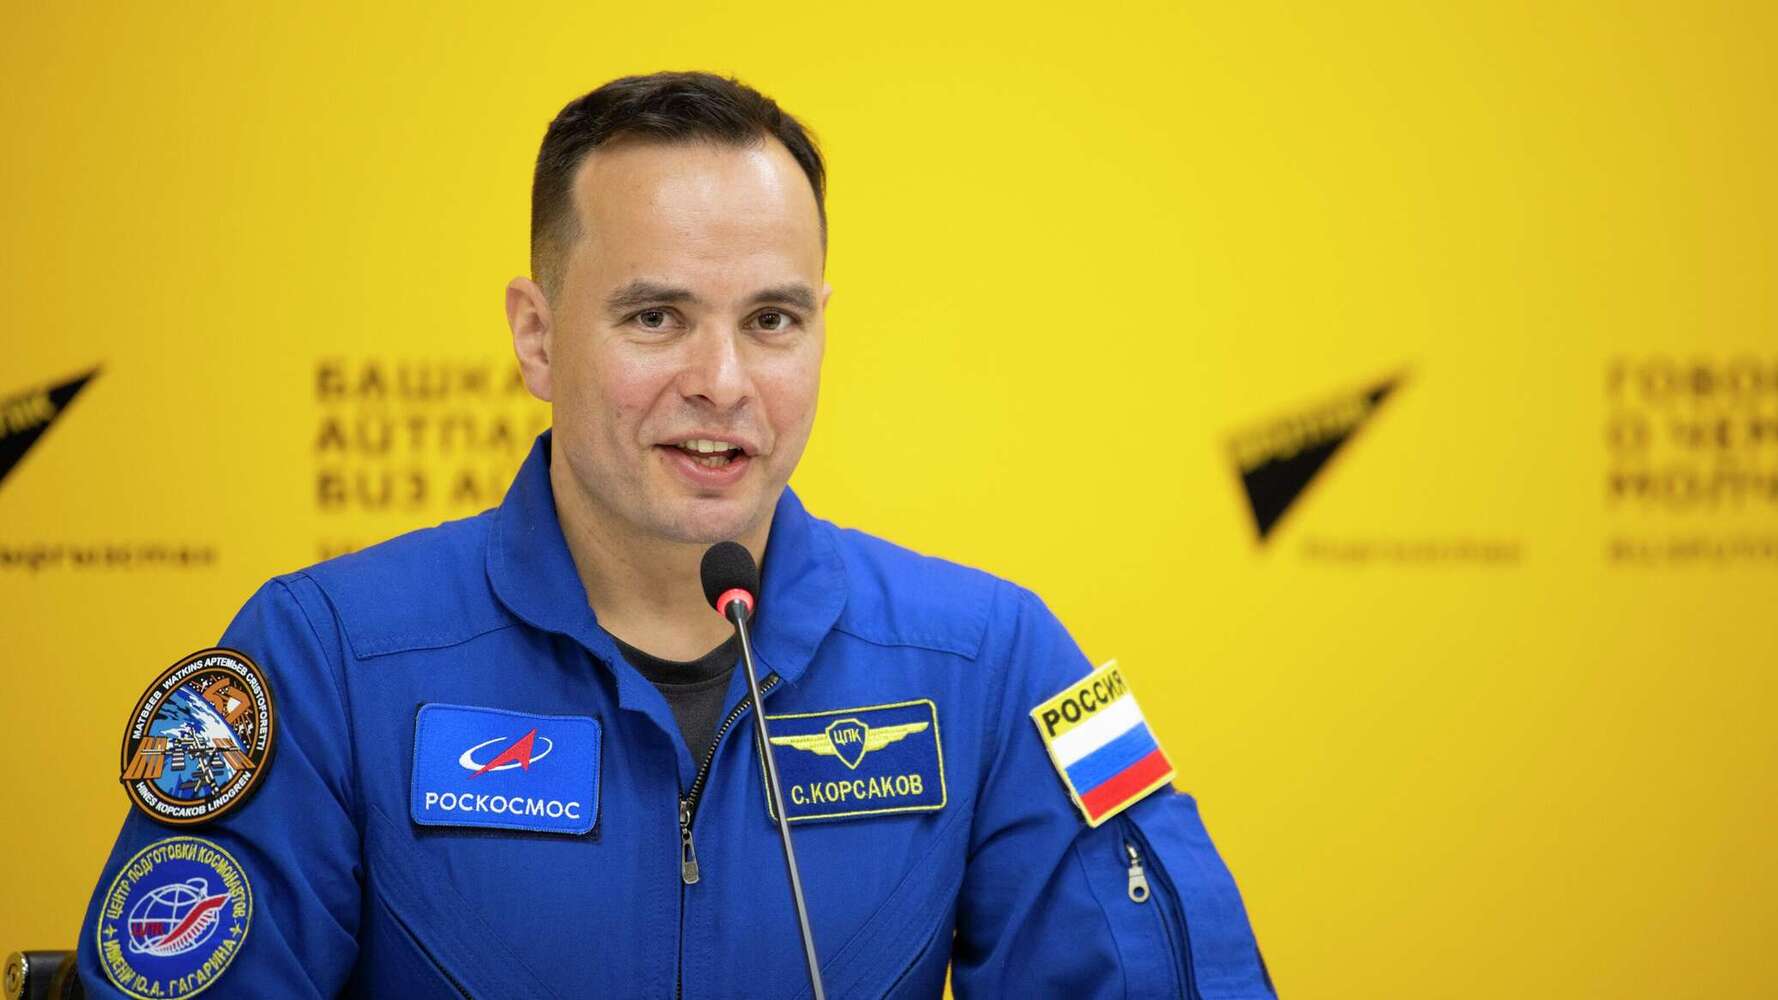 Завтра в Бишкеке пройдет открытая встреча с космонавтом Корсаковым — Today.kg